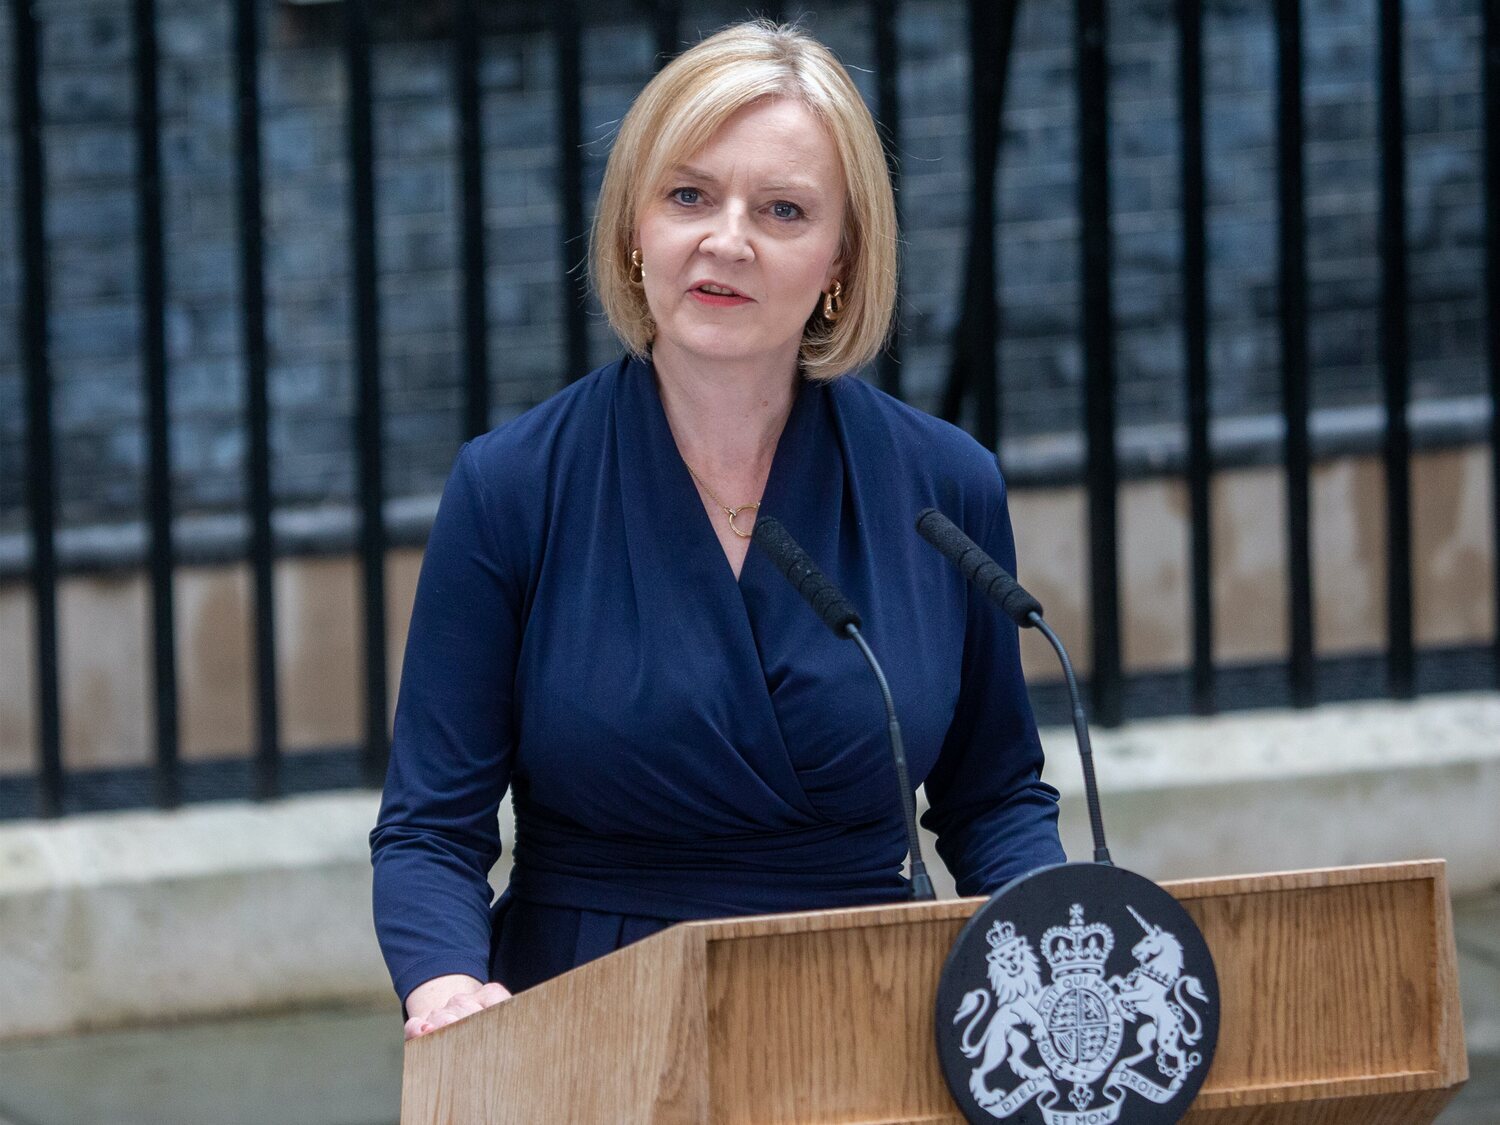 Dimite Liz Truss como primera ministra de Reino Unido tras 45 días en el cargo